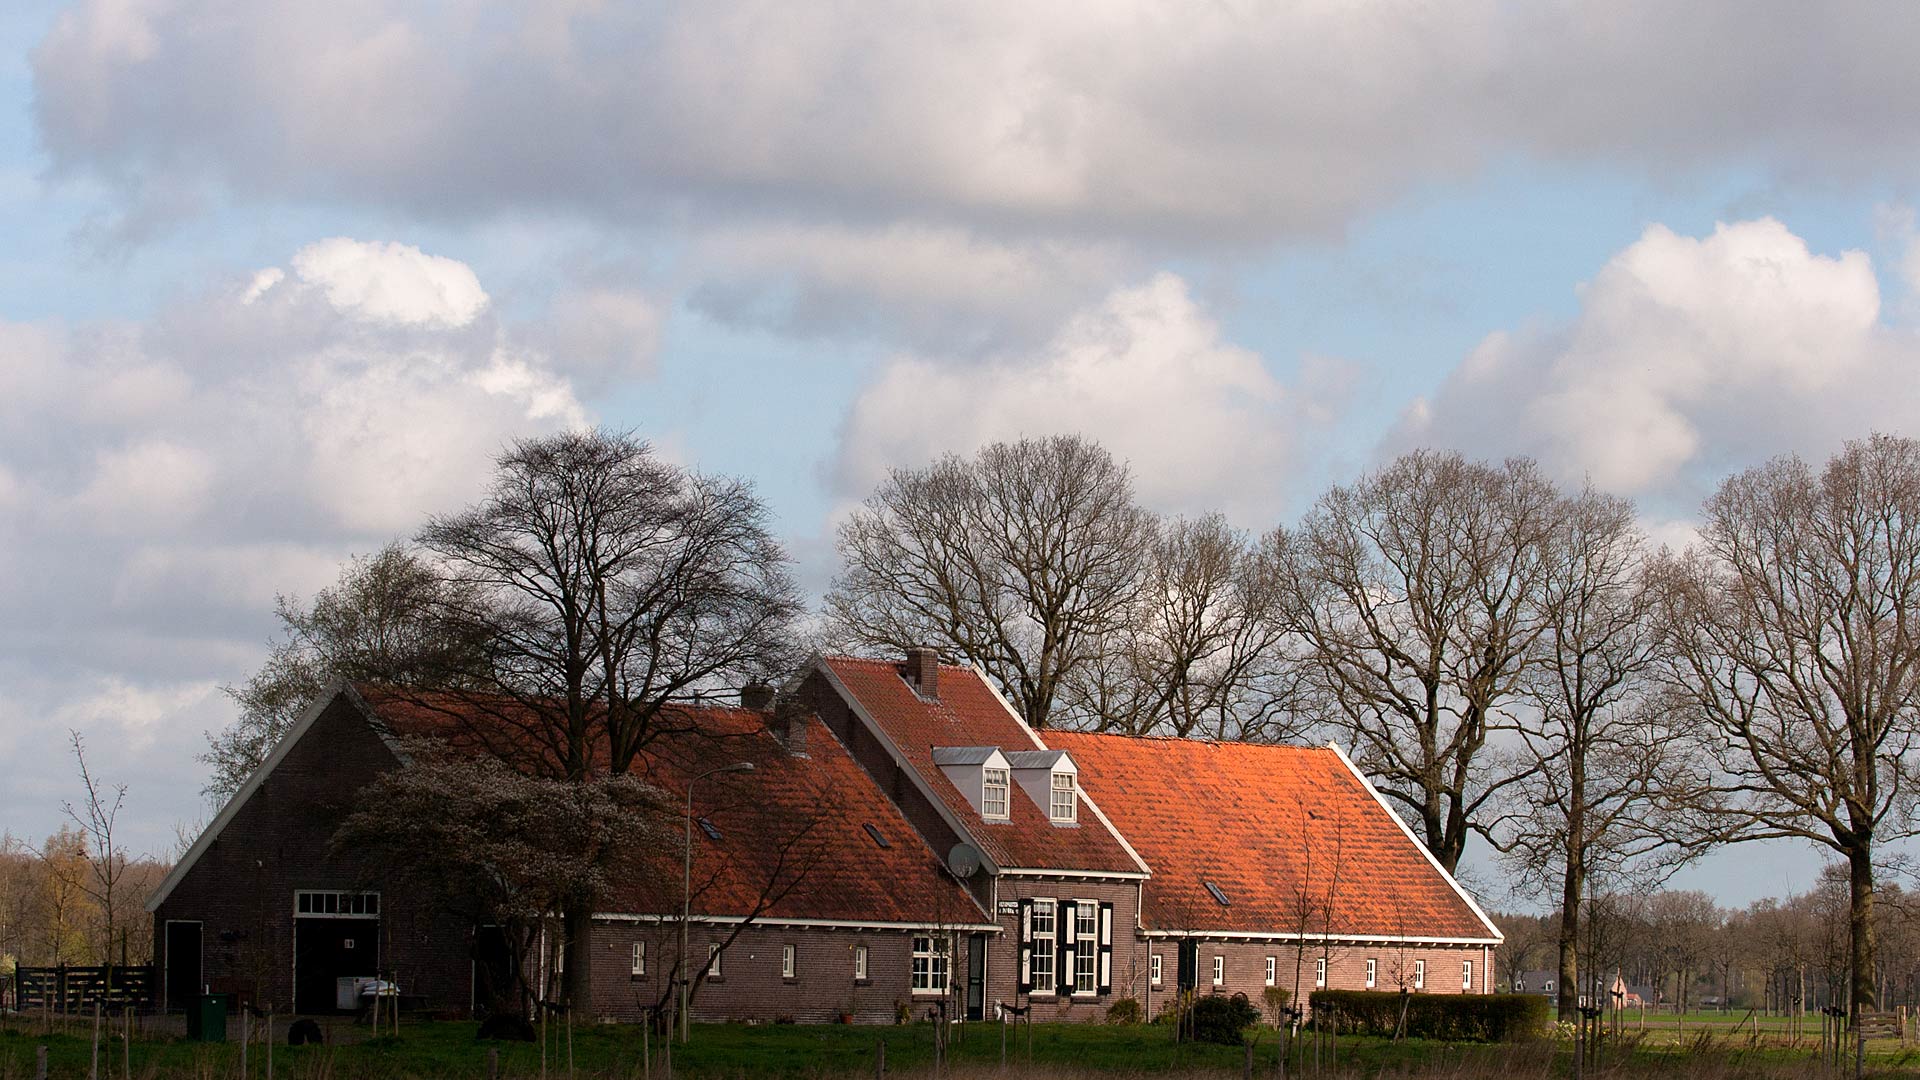 Скачать обои бесплатно Здание, Нидерланды, Ферма, Сделано Человеком картинка на рабочий стол ПК